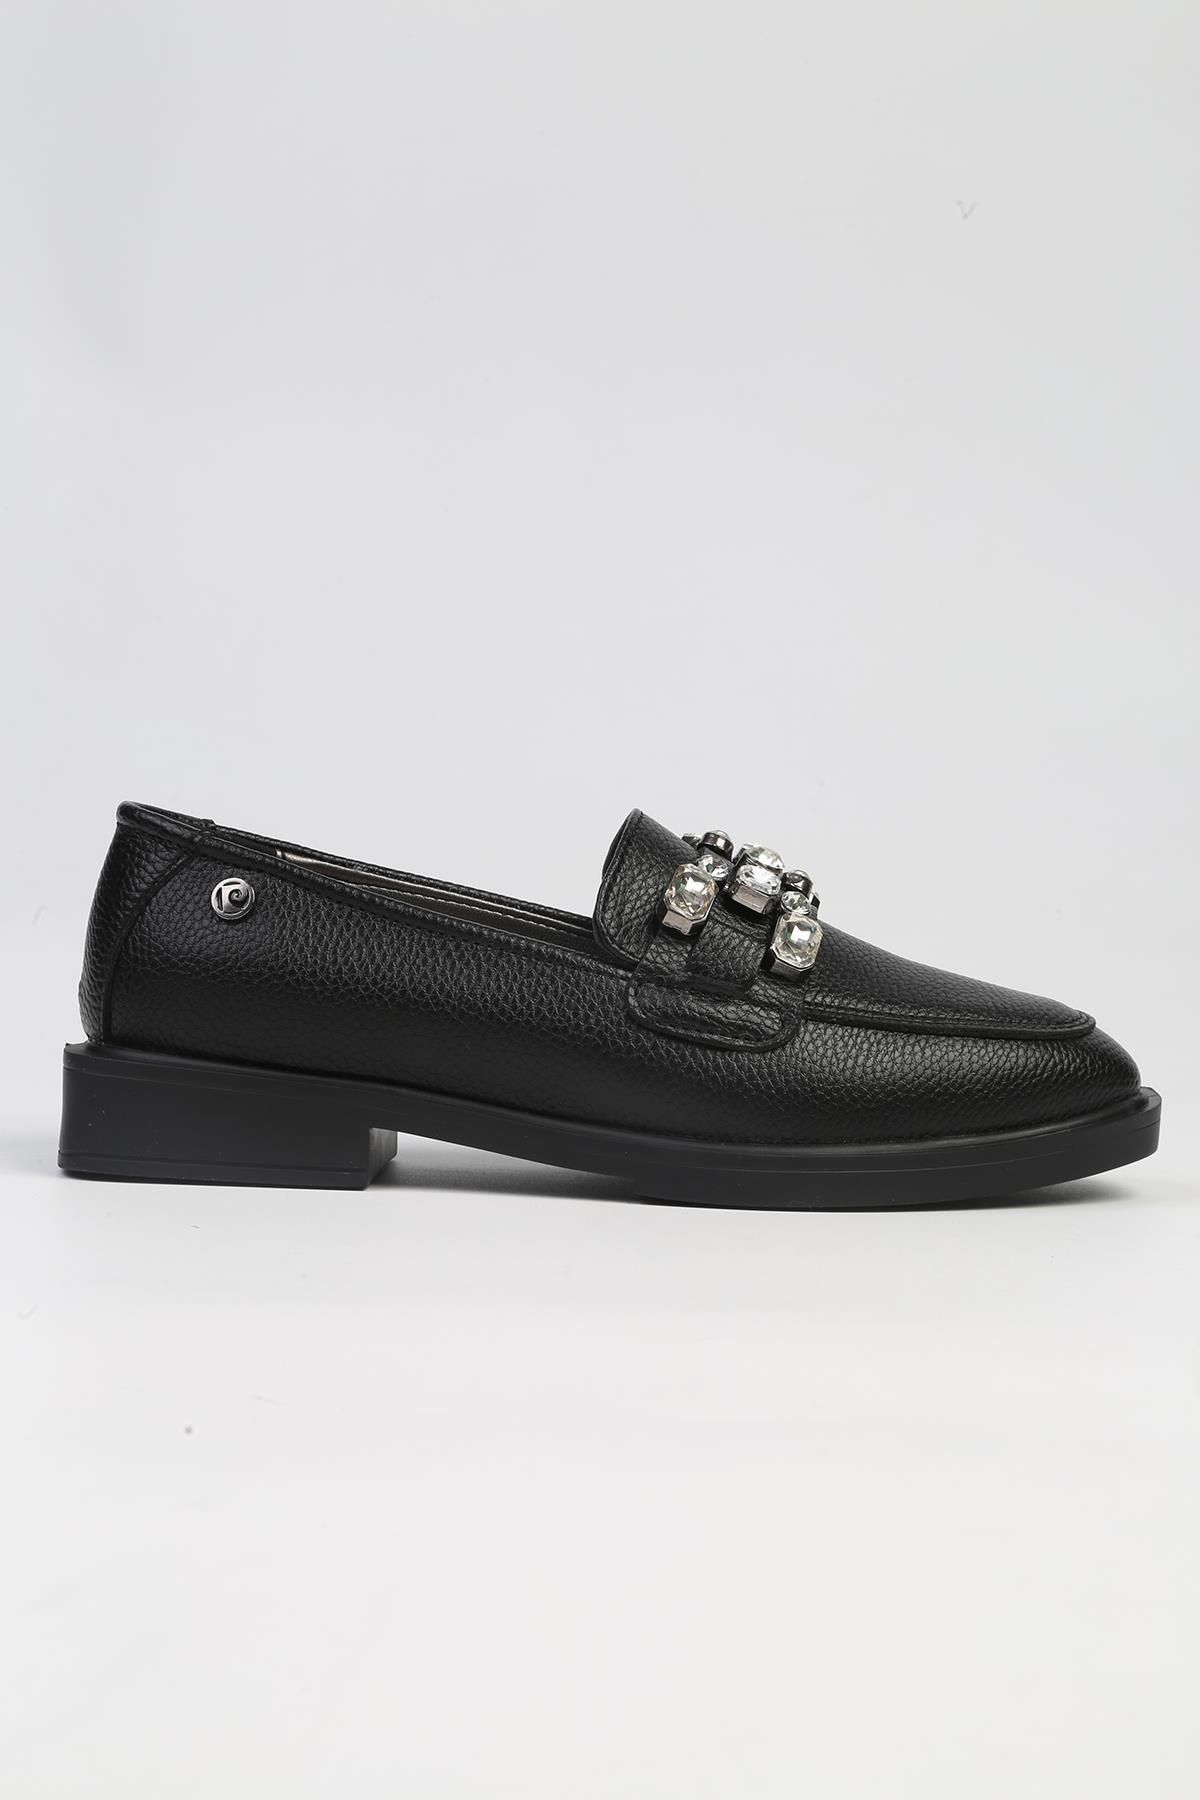 Pierre Cardin ® | PC-53150 - 3441 Siyah Floter-Kadın Loafer Günlük Ayakkabı